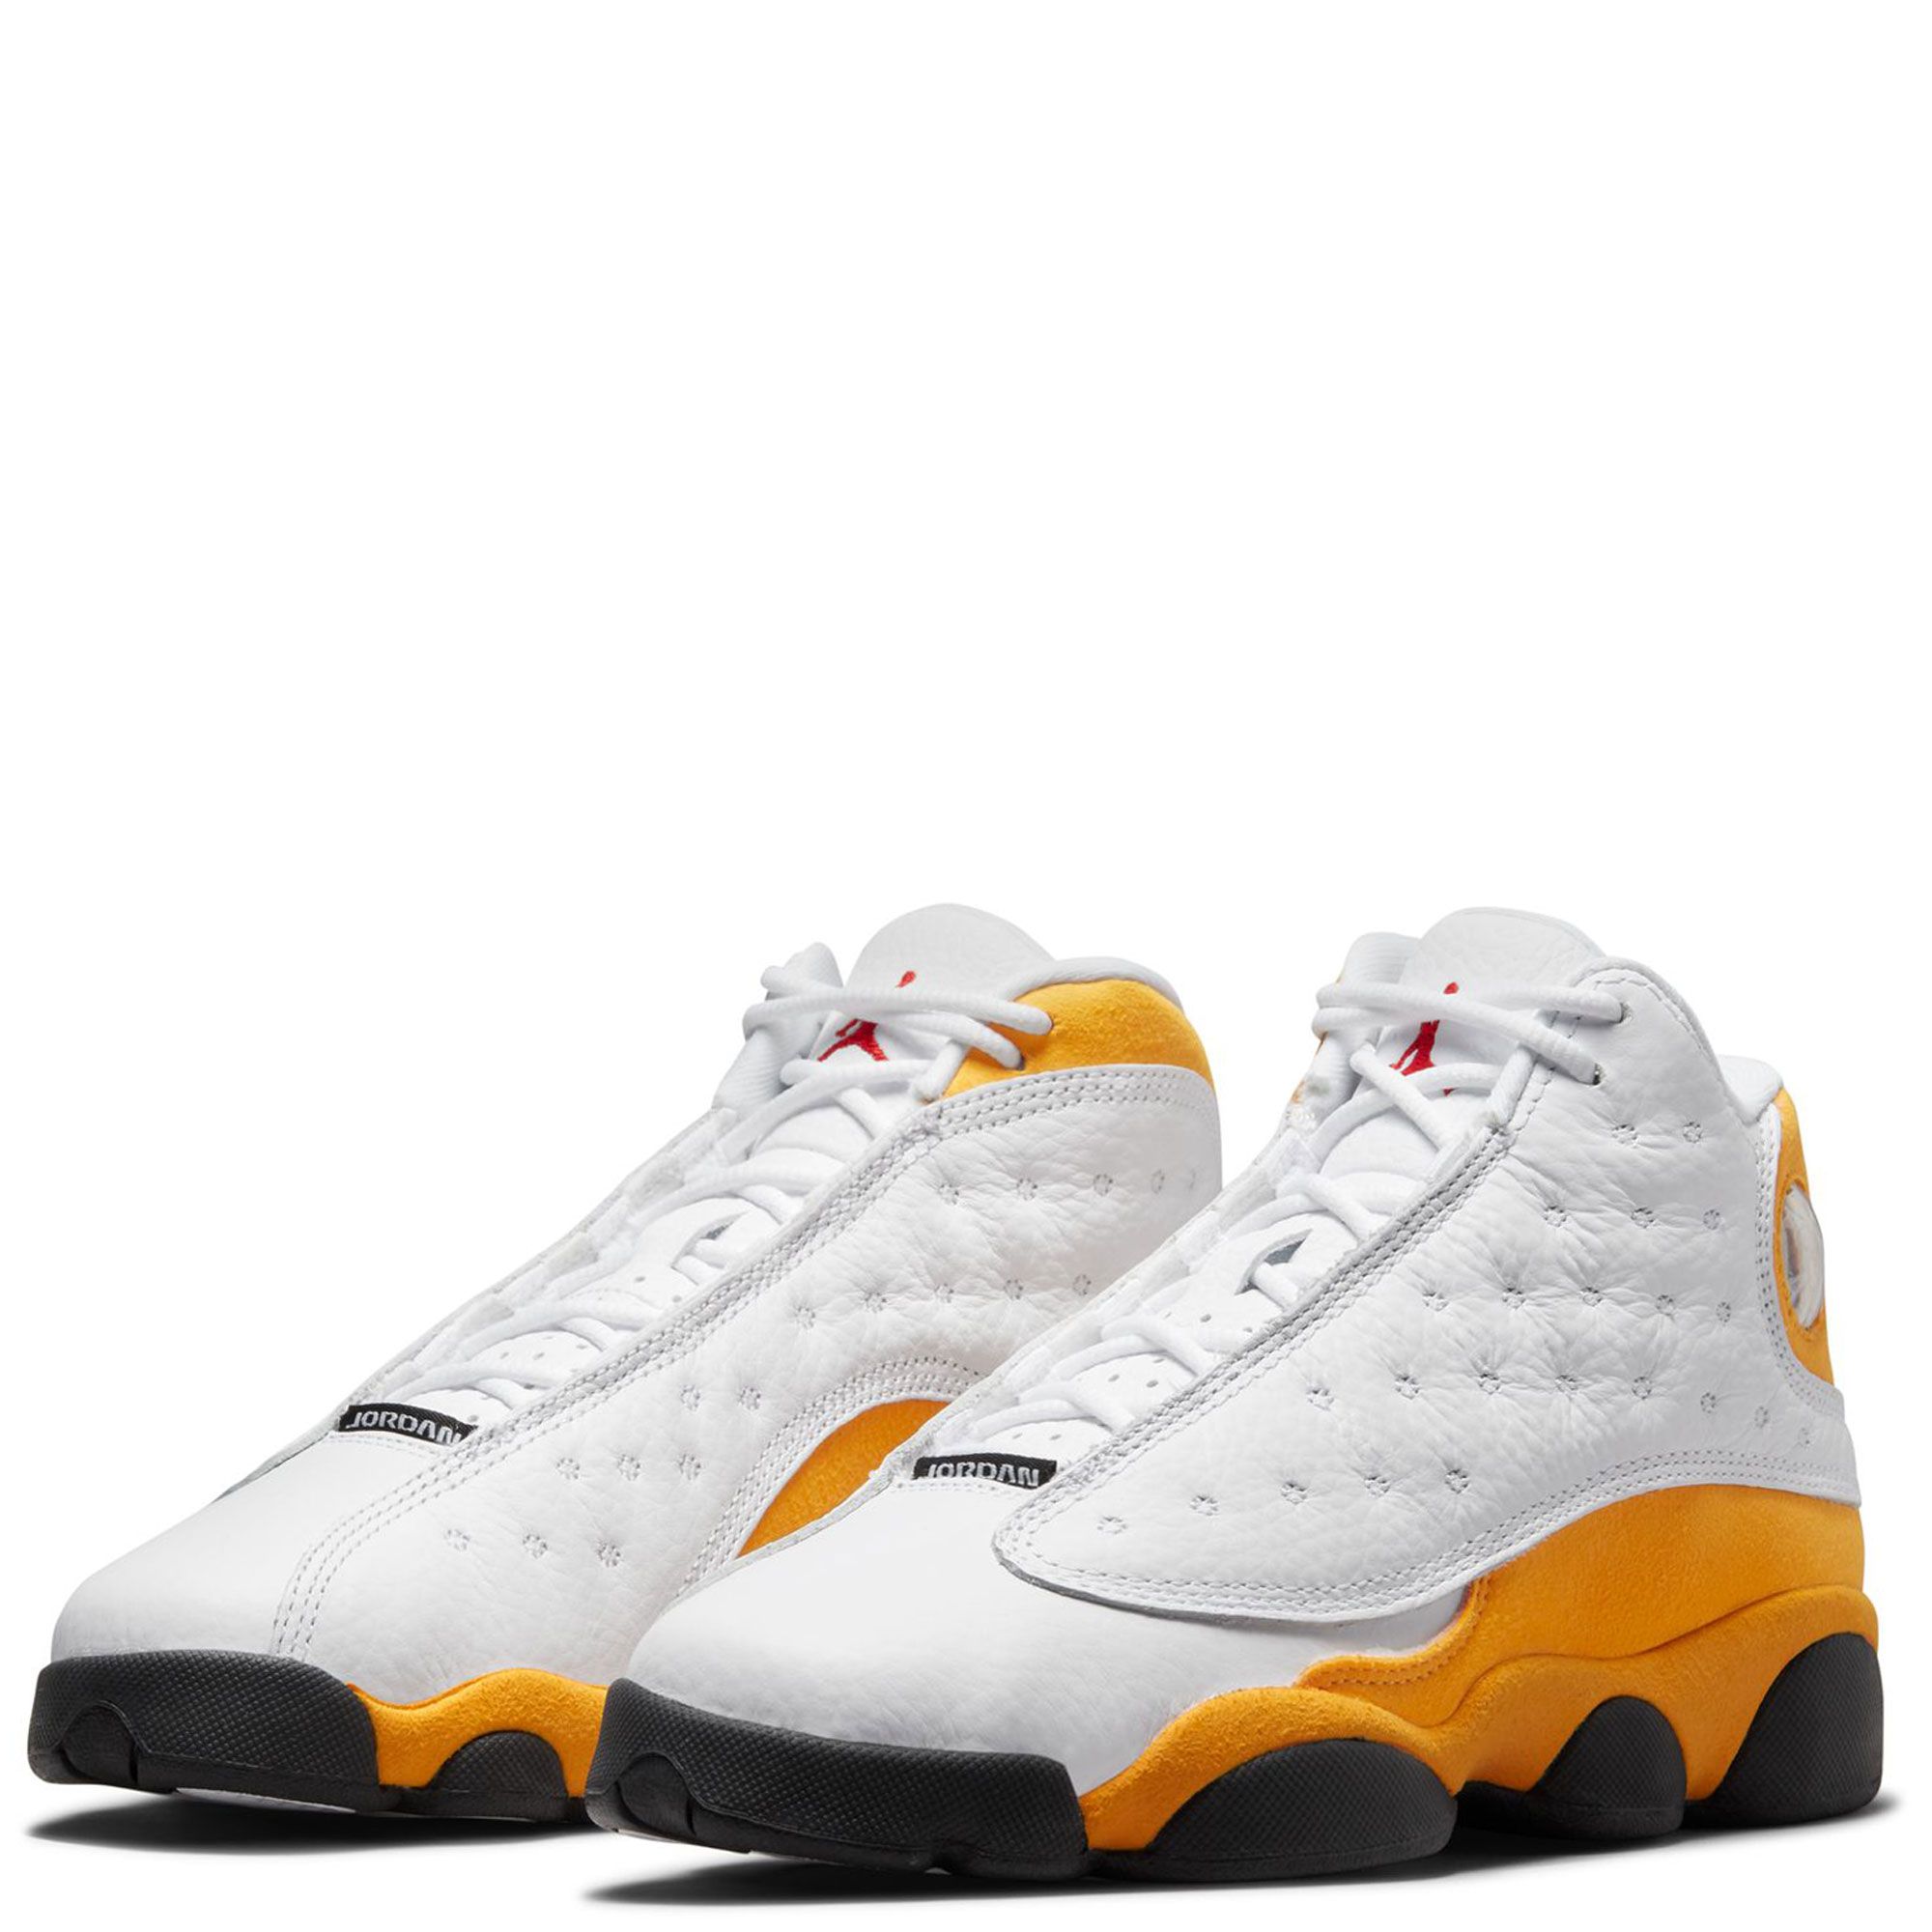 Air Jordan 13 Retro Yellow and White. Size 4